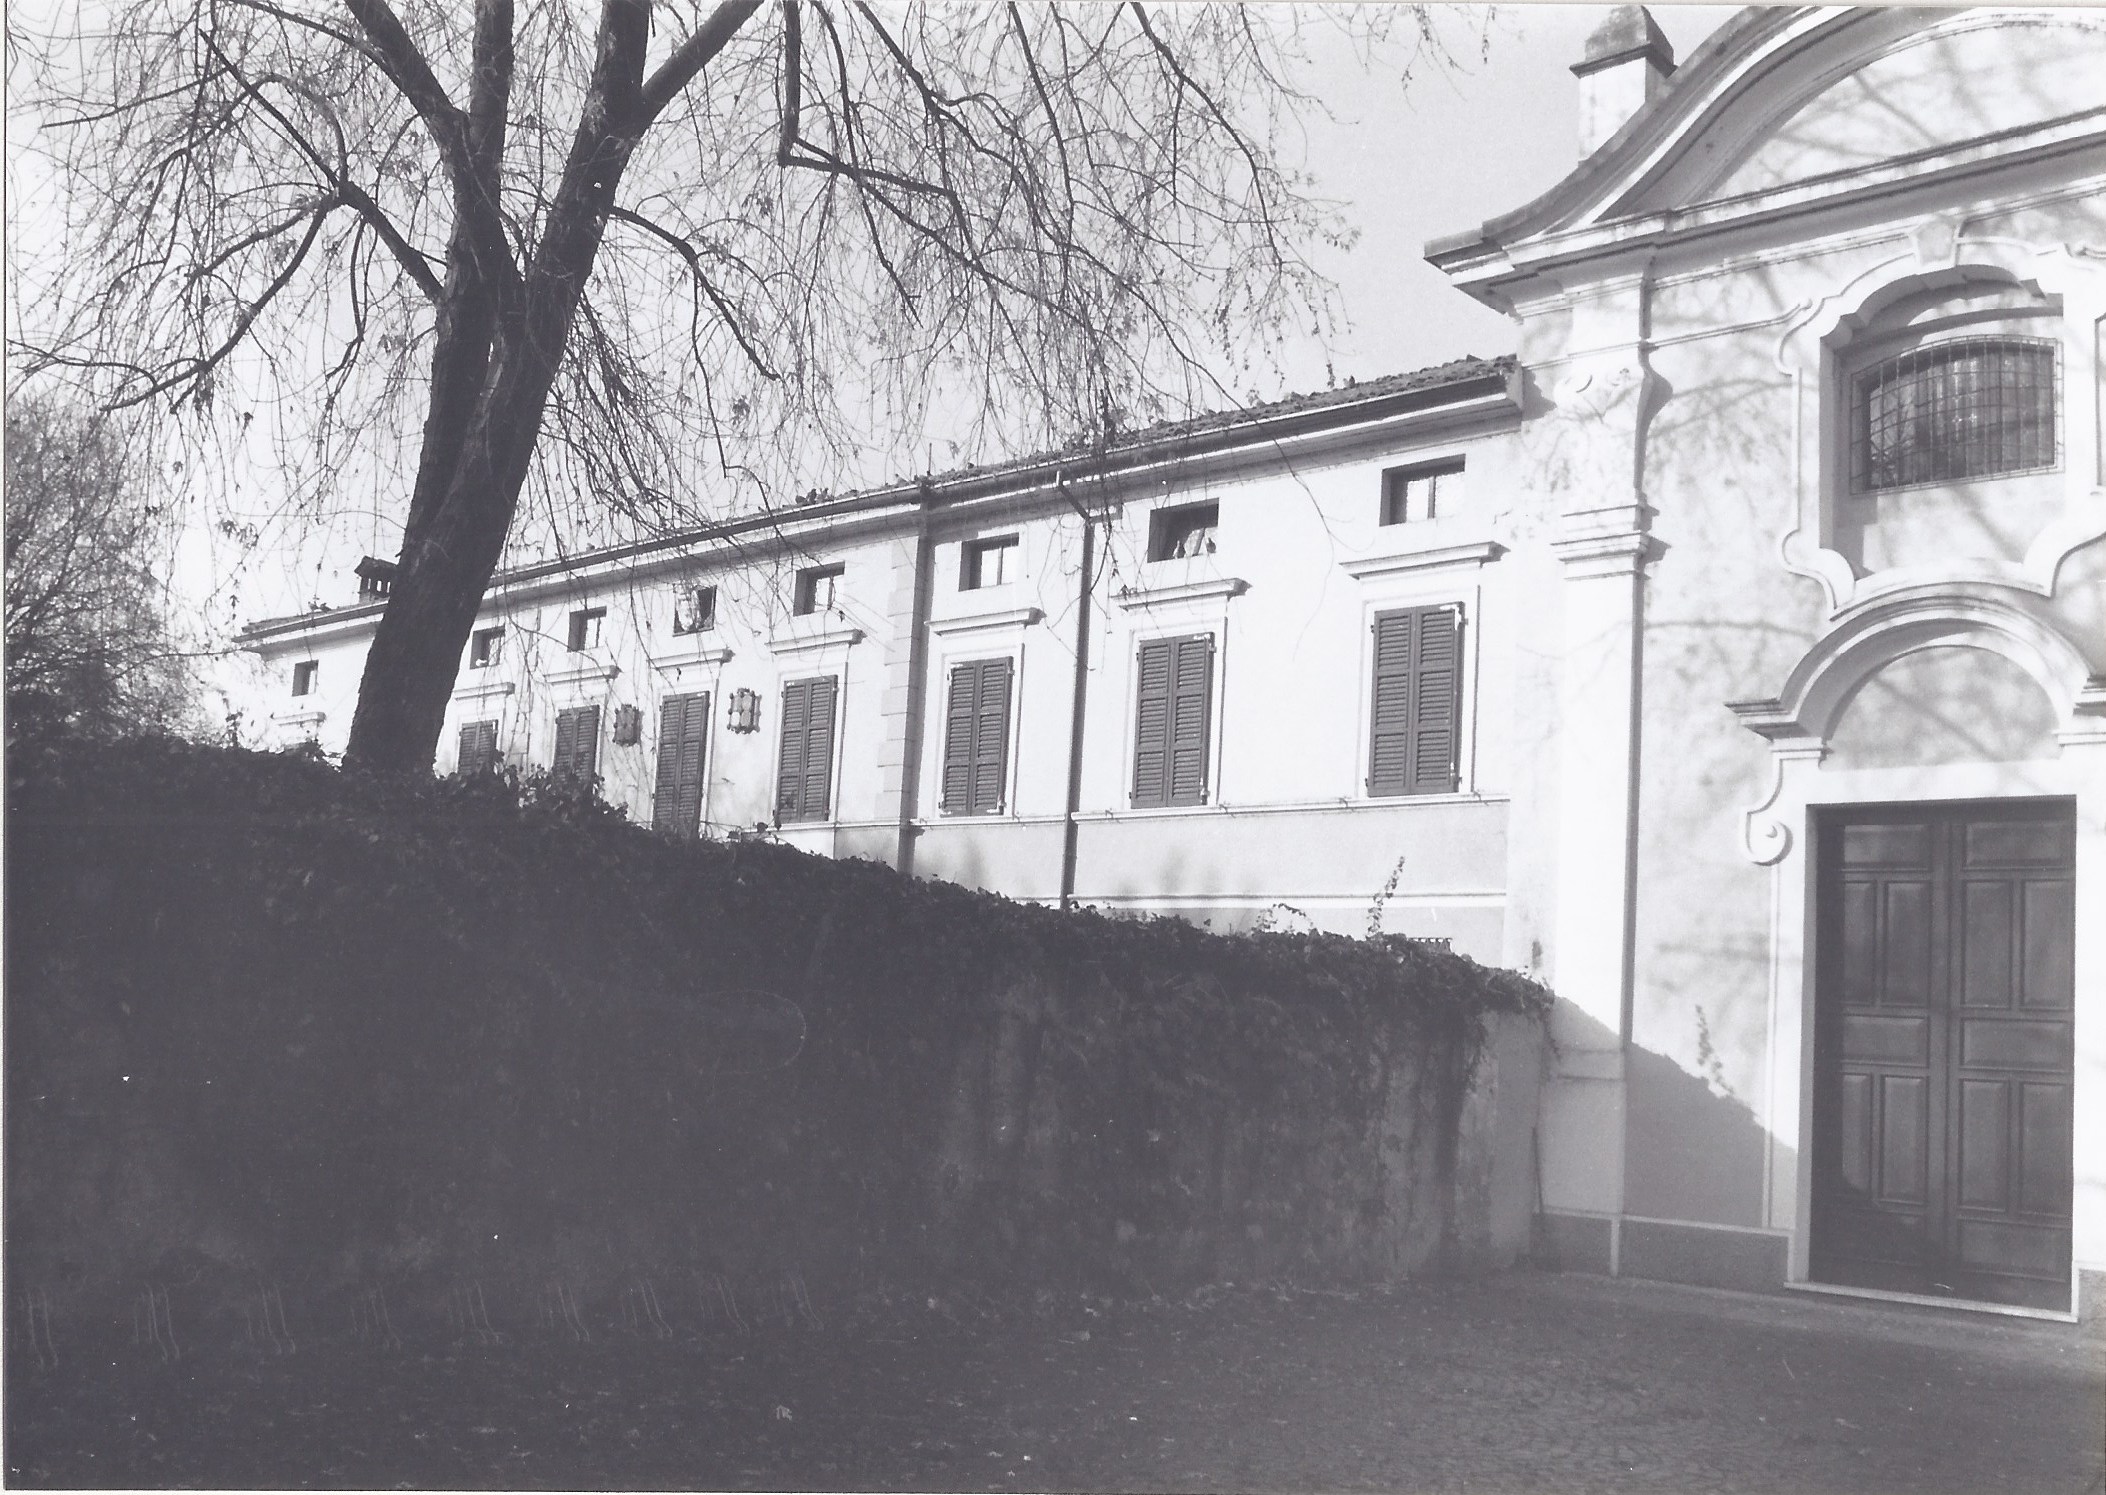 Convento Ospedale dell'Oratorio di Mezzano (Villa Virginia) (ospedale) - Castelvetro Piacentino (PC)  (XVIII, inizio)